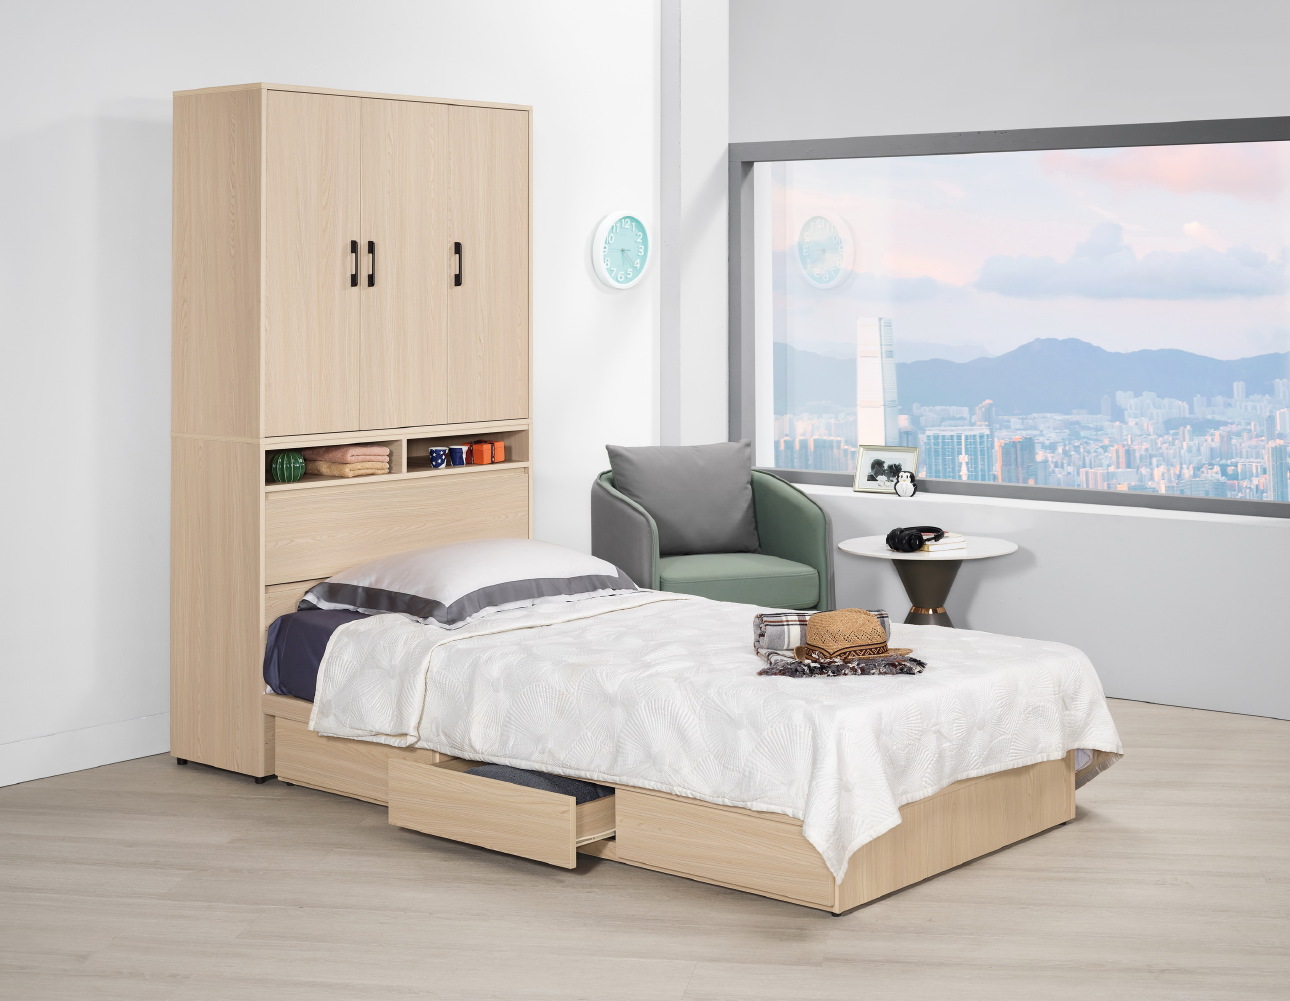 艾維斯3.5尺衣櫃式多功能雙人床(全組)